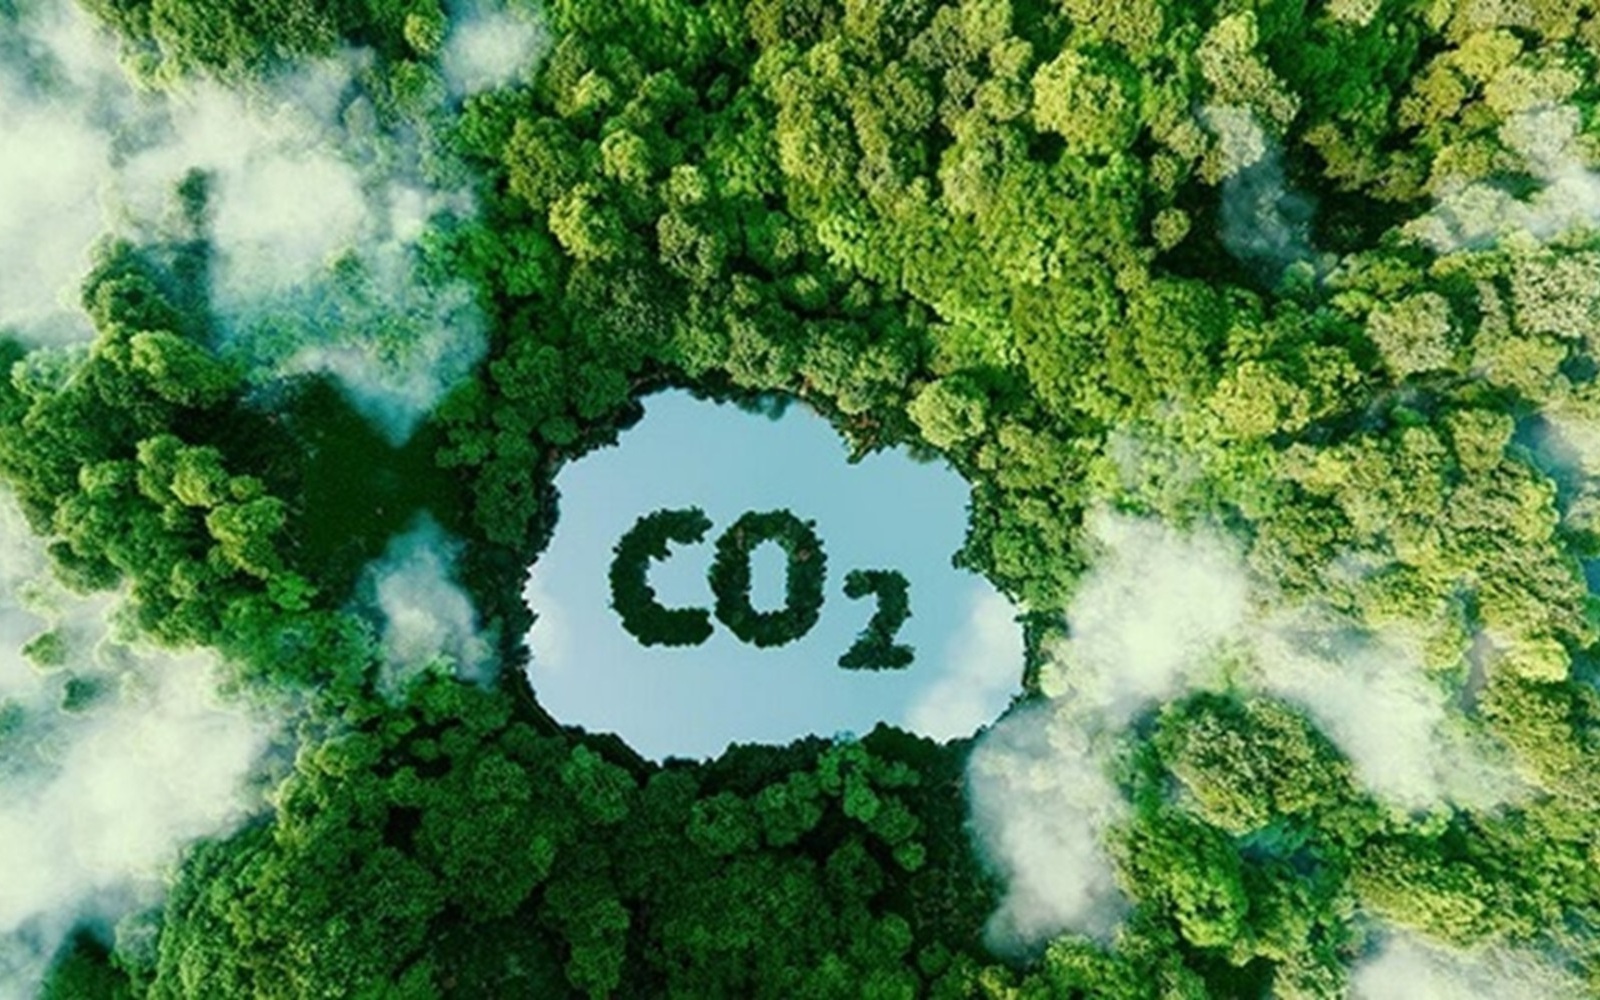 Bán tín chỉ carbon rừng: Ngồi không cũng thu triệu đô?